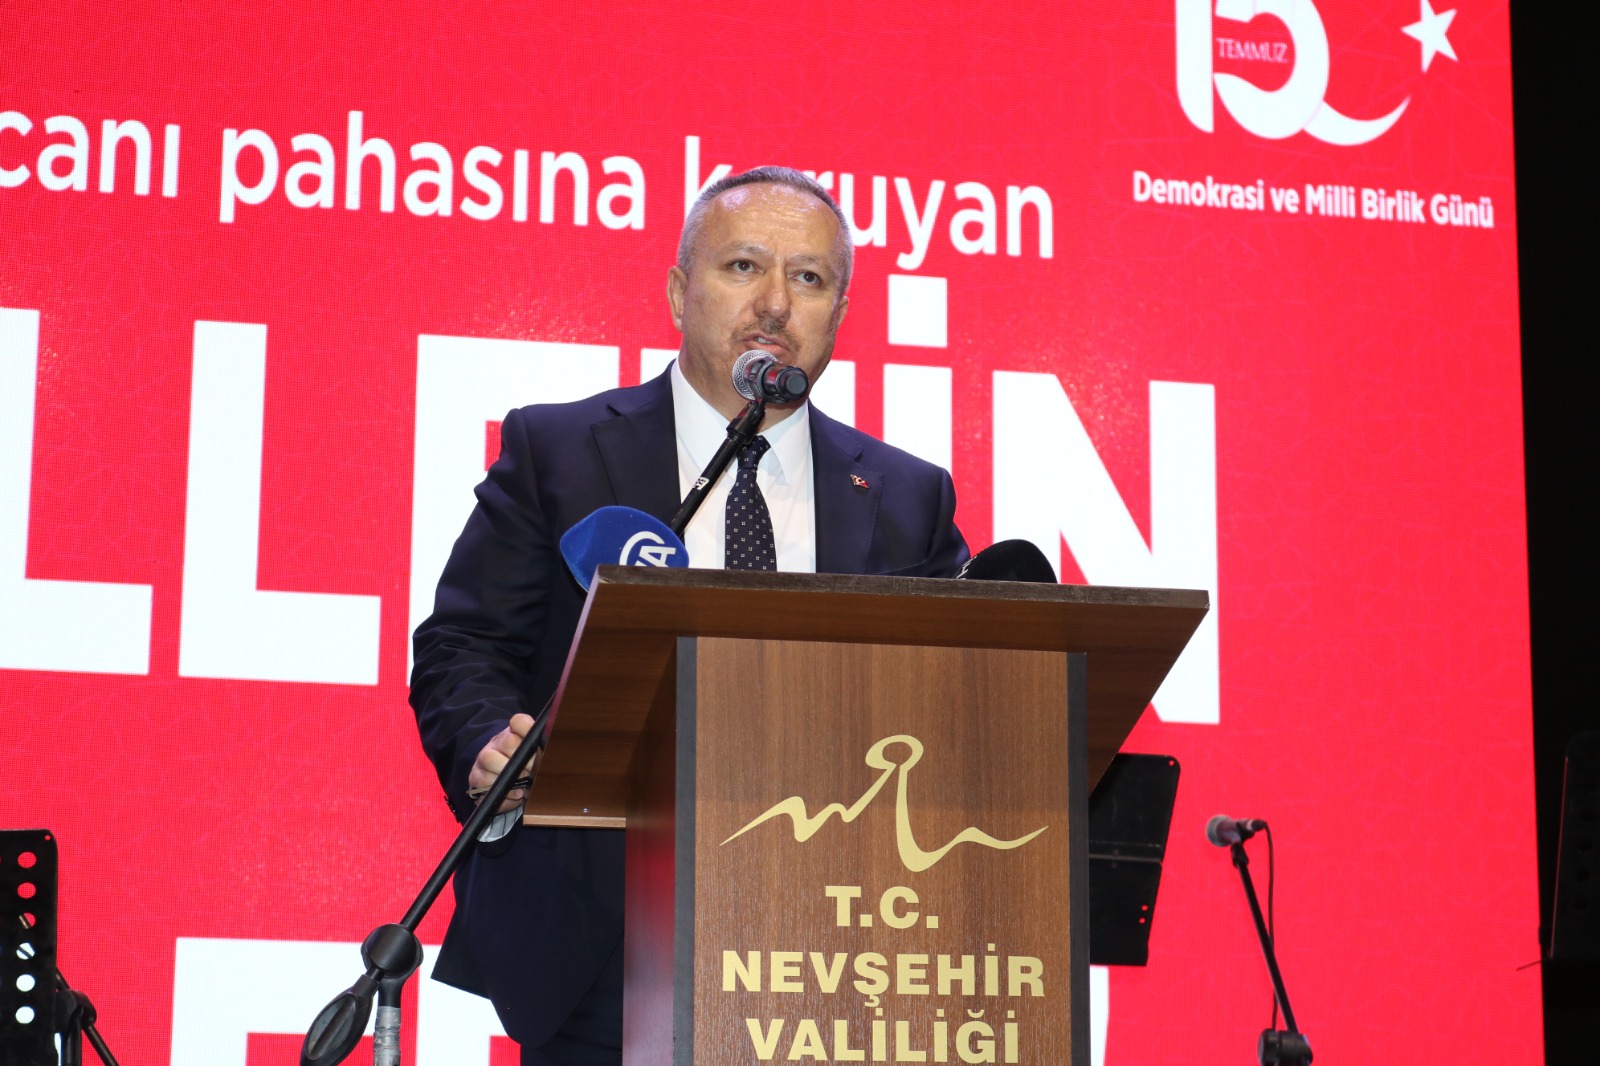 Nevşehir ‘de 15 Temmuz Demokrasi ve Milli Birlik Günü Anma etkinli yapıldı